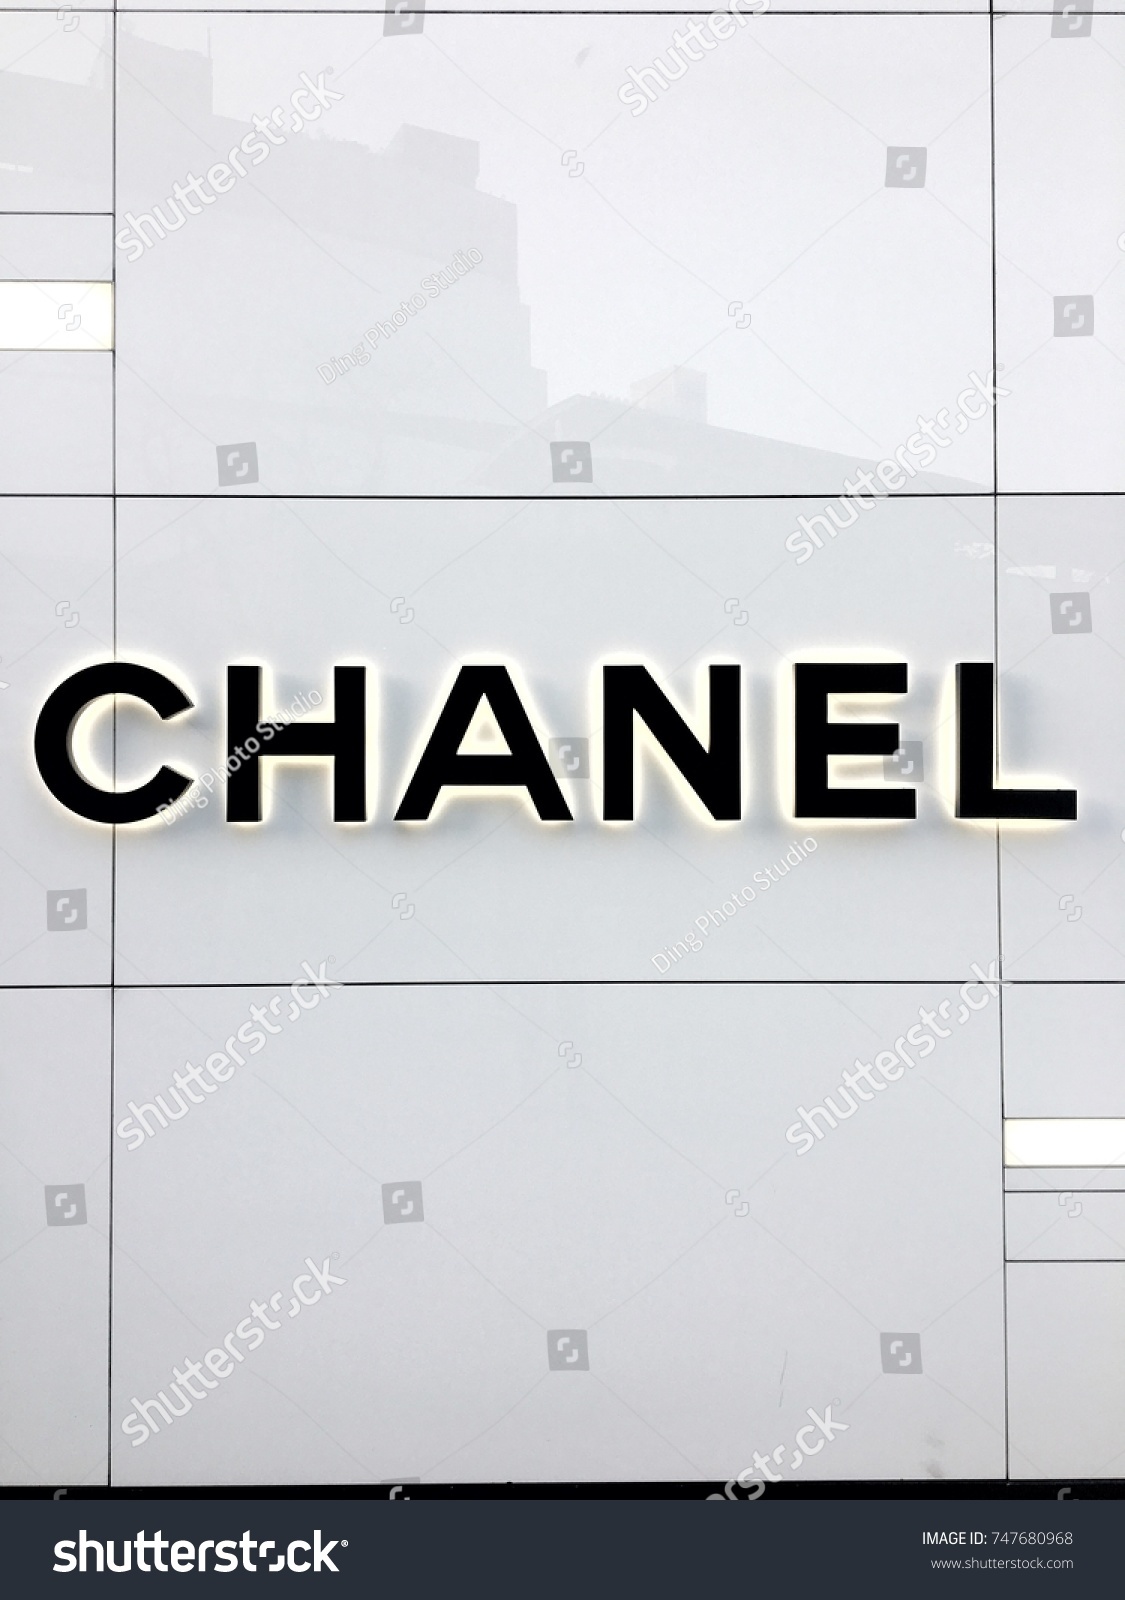 Descubra Chanel Logo Front Chanel Store Emquartier Imagenes De Stock En Hd Y Millones De Otras Fotos Ilustraciones Y Vectores En Stock Libres De Regalias En La Coleccion De Shutterstock Se Agregan Miles De Imagenes Nuevas De Alta Calidad Todos Los